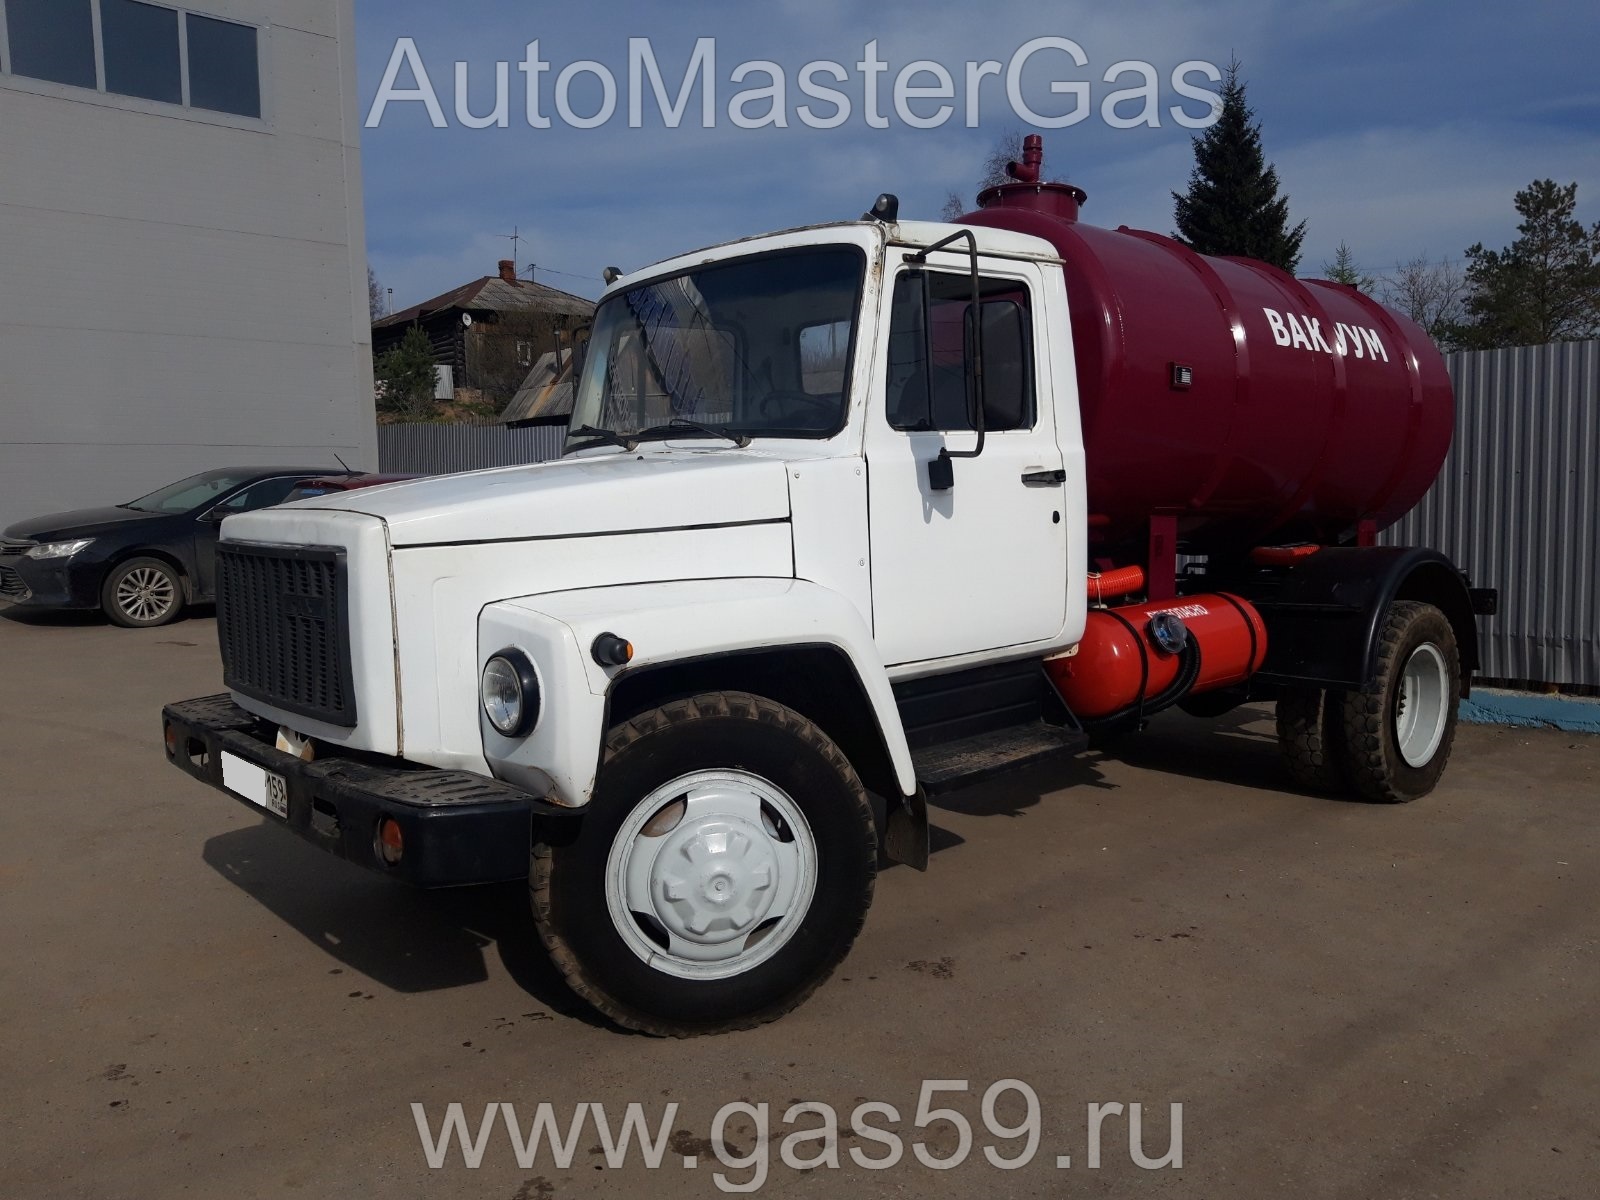 Комплект ГБО 2 поколения на ГАЗ 53